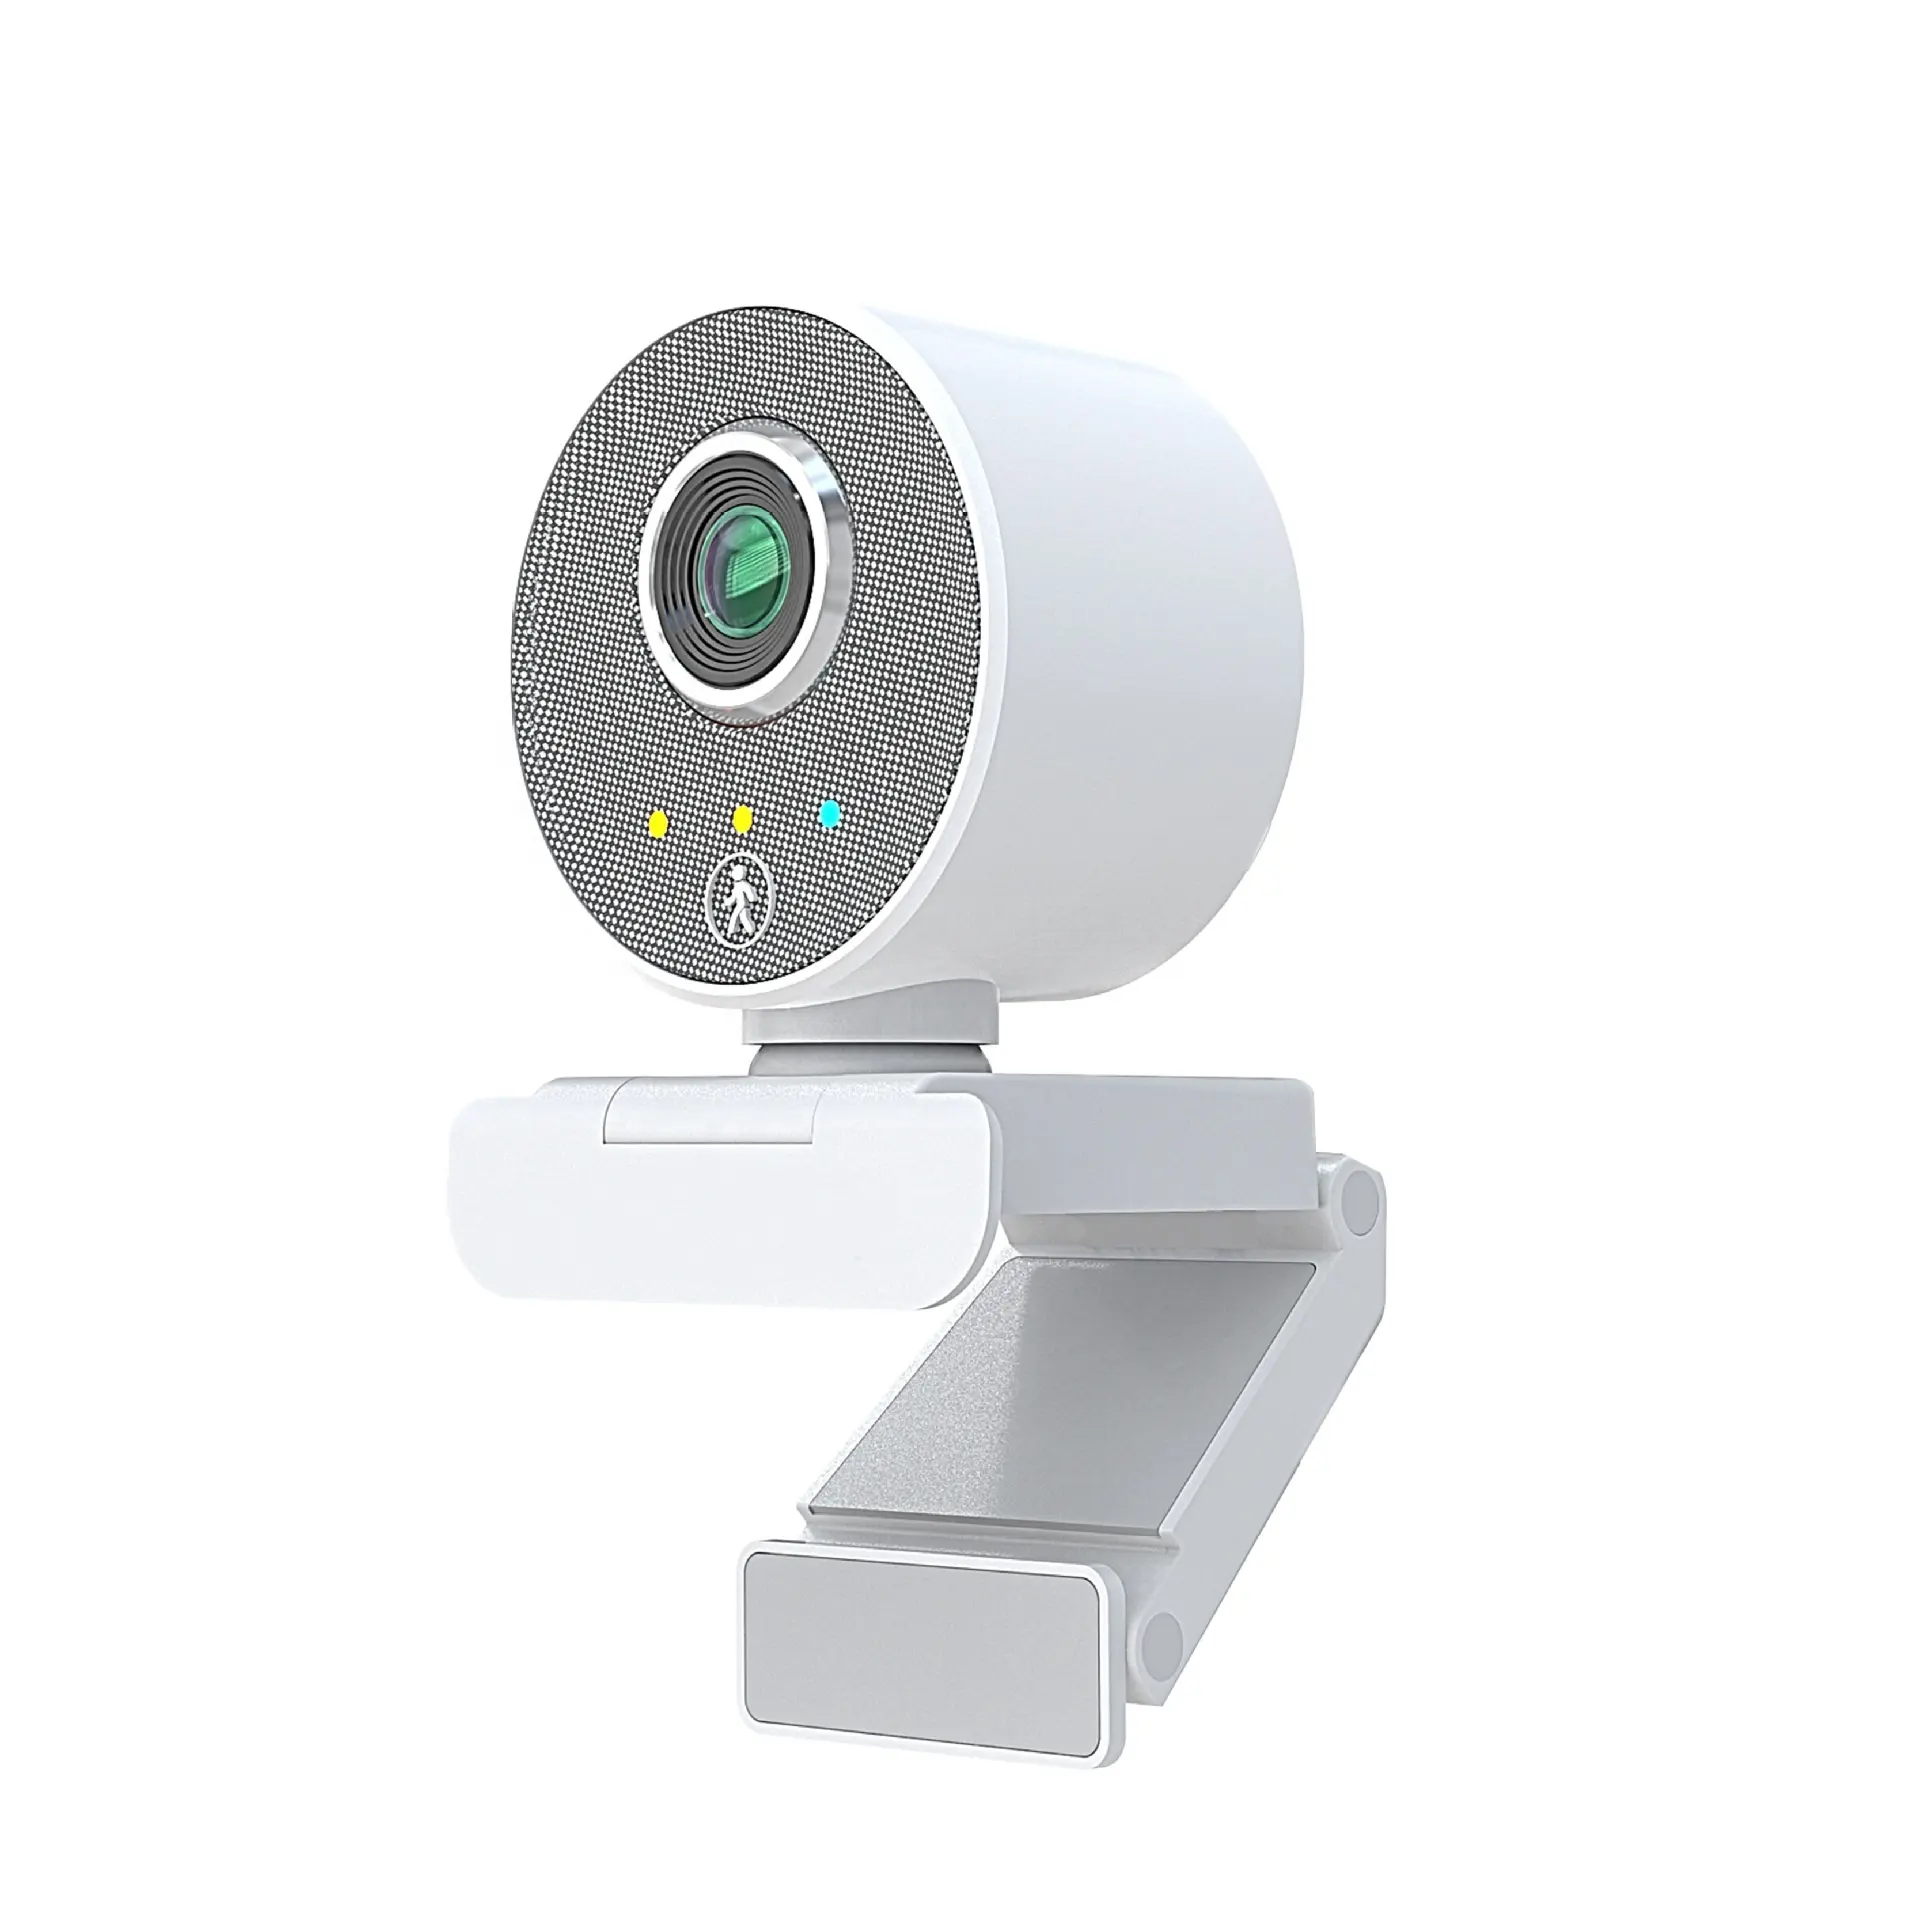 AI Humanoid Tự Động Theo Dõi Usb Webcam Web Cameran Thông Minh Mini Live Hd 1080P Web PC Máy Ảnh 60fps Hd Video Webcam